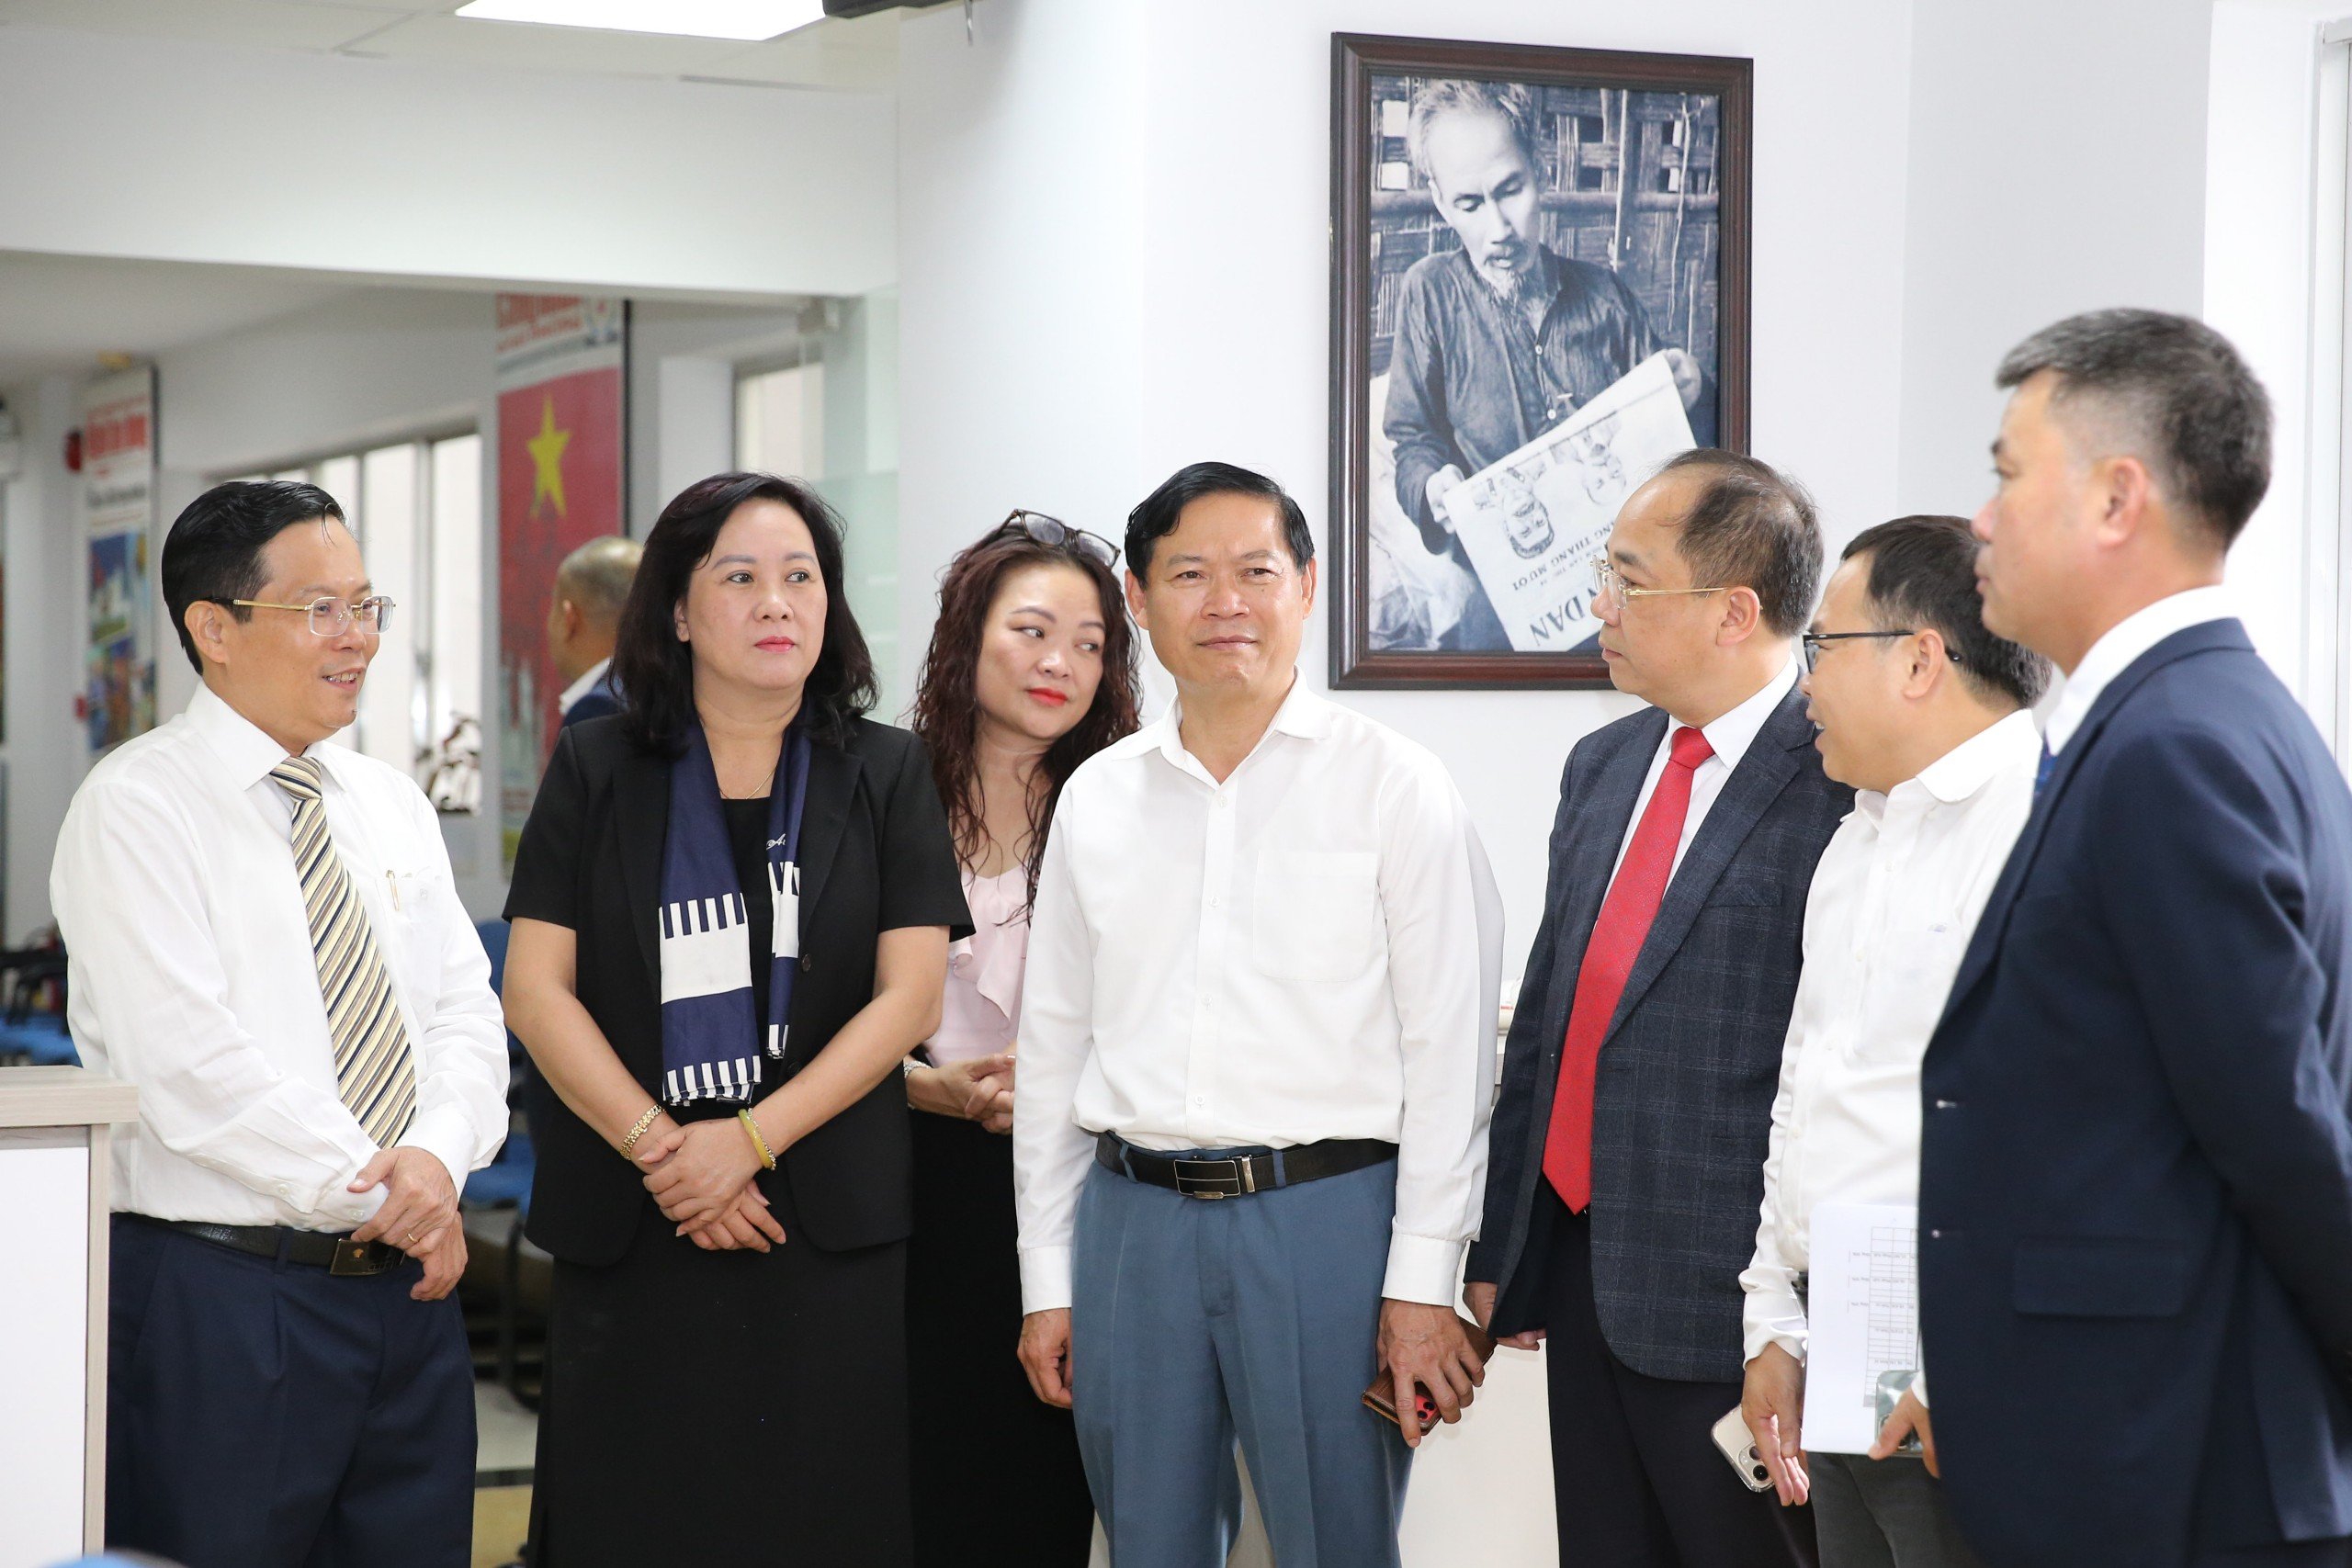 Báo Người Lao Động, Báo VietNamNet, Báo Tuổi trẻ Thủ đô ký kết hợp tác- Ảnh 1.